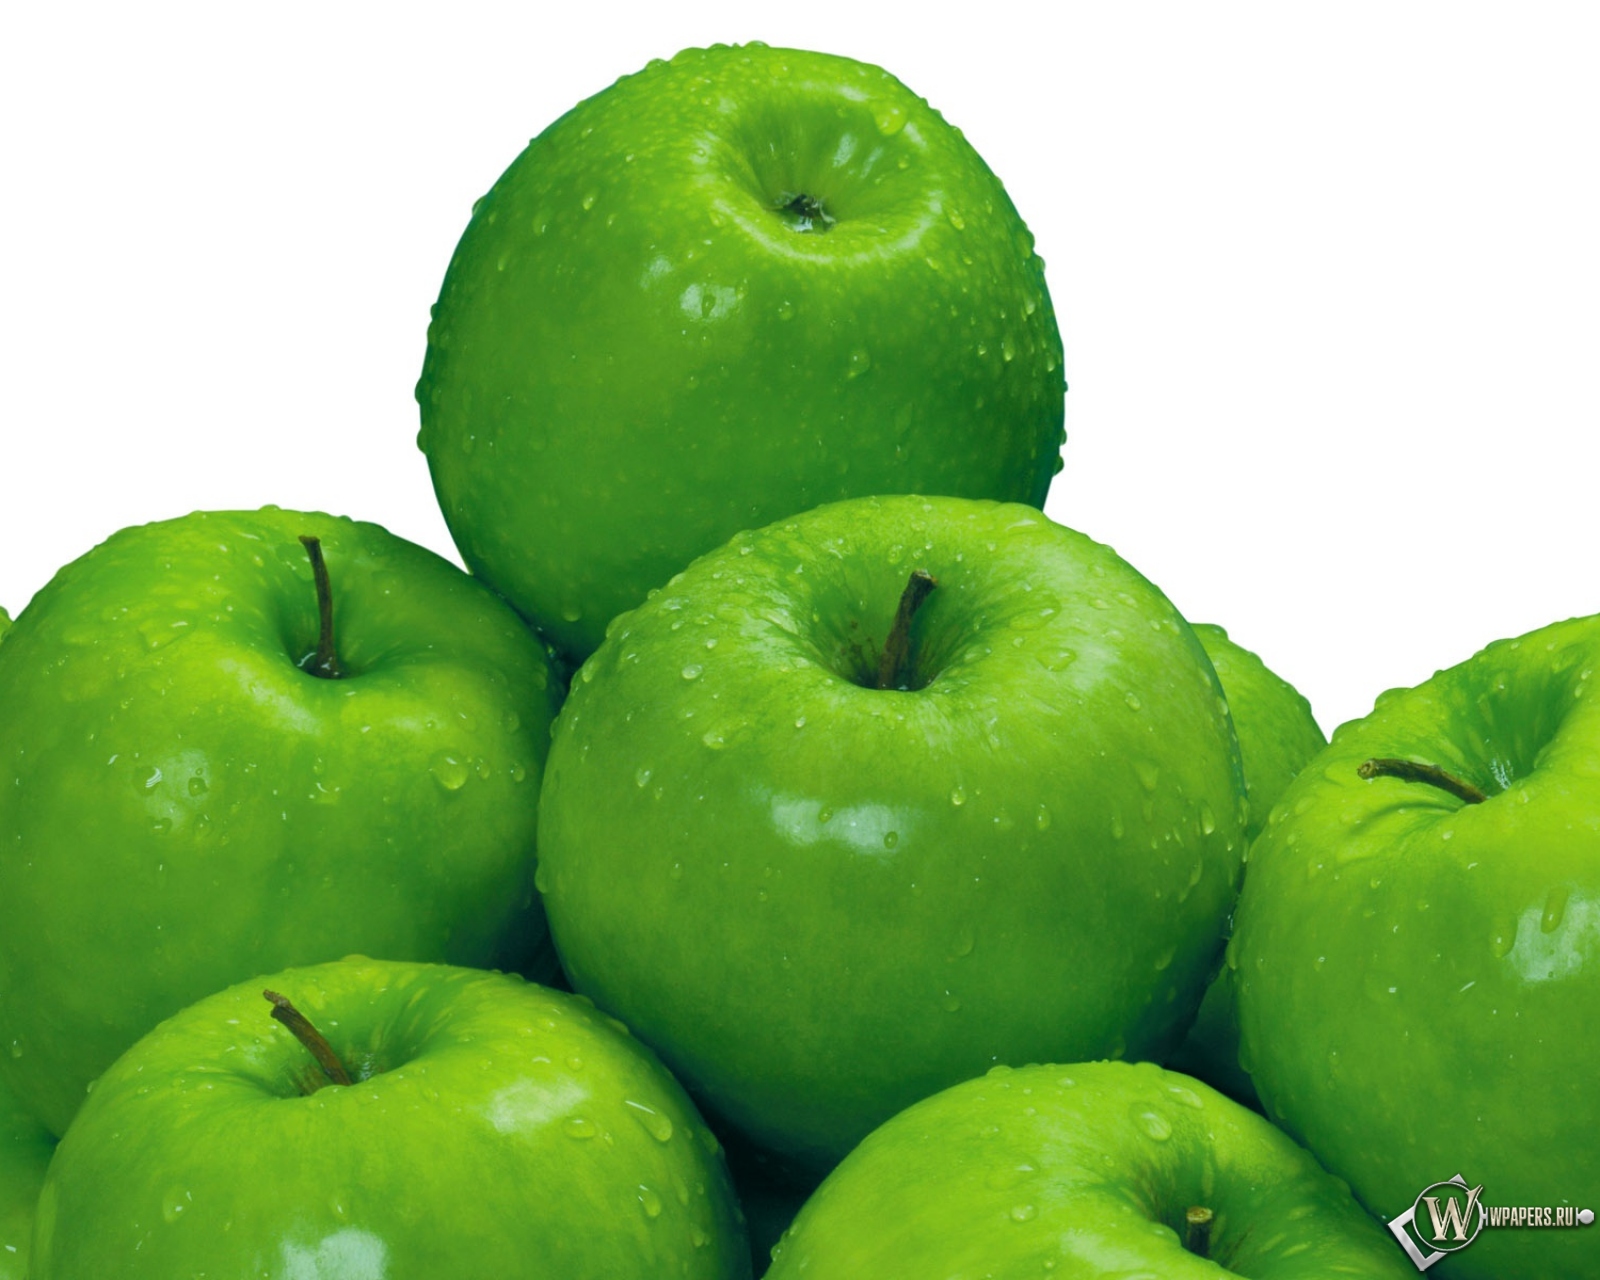 Скачать обои Сочные зеленые яблоки (Зелёный, Яблоки) для рабочего стола .